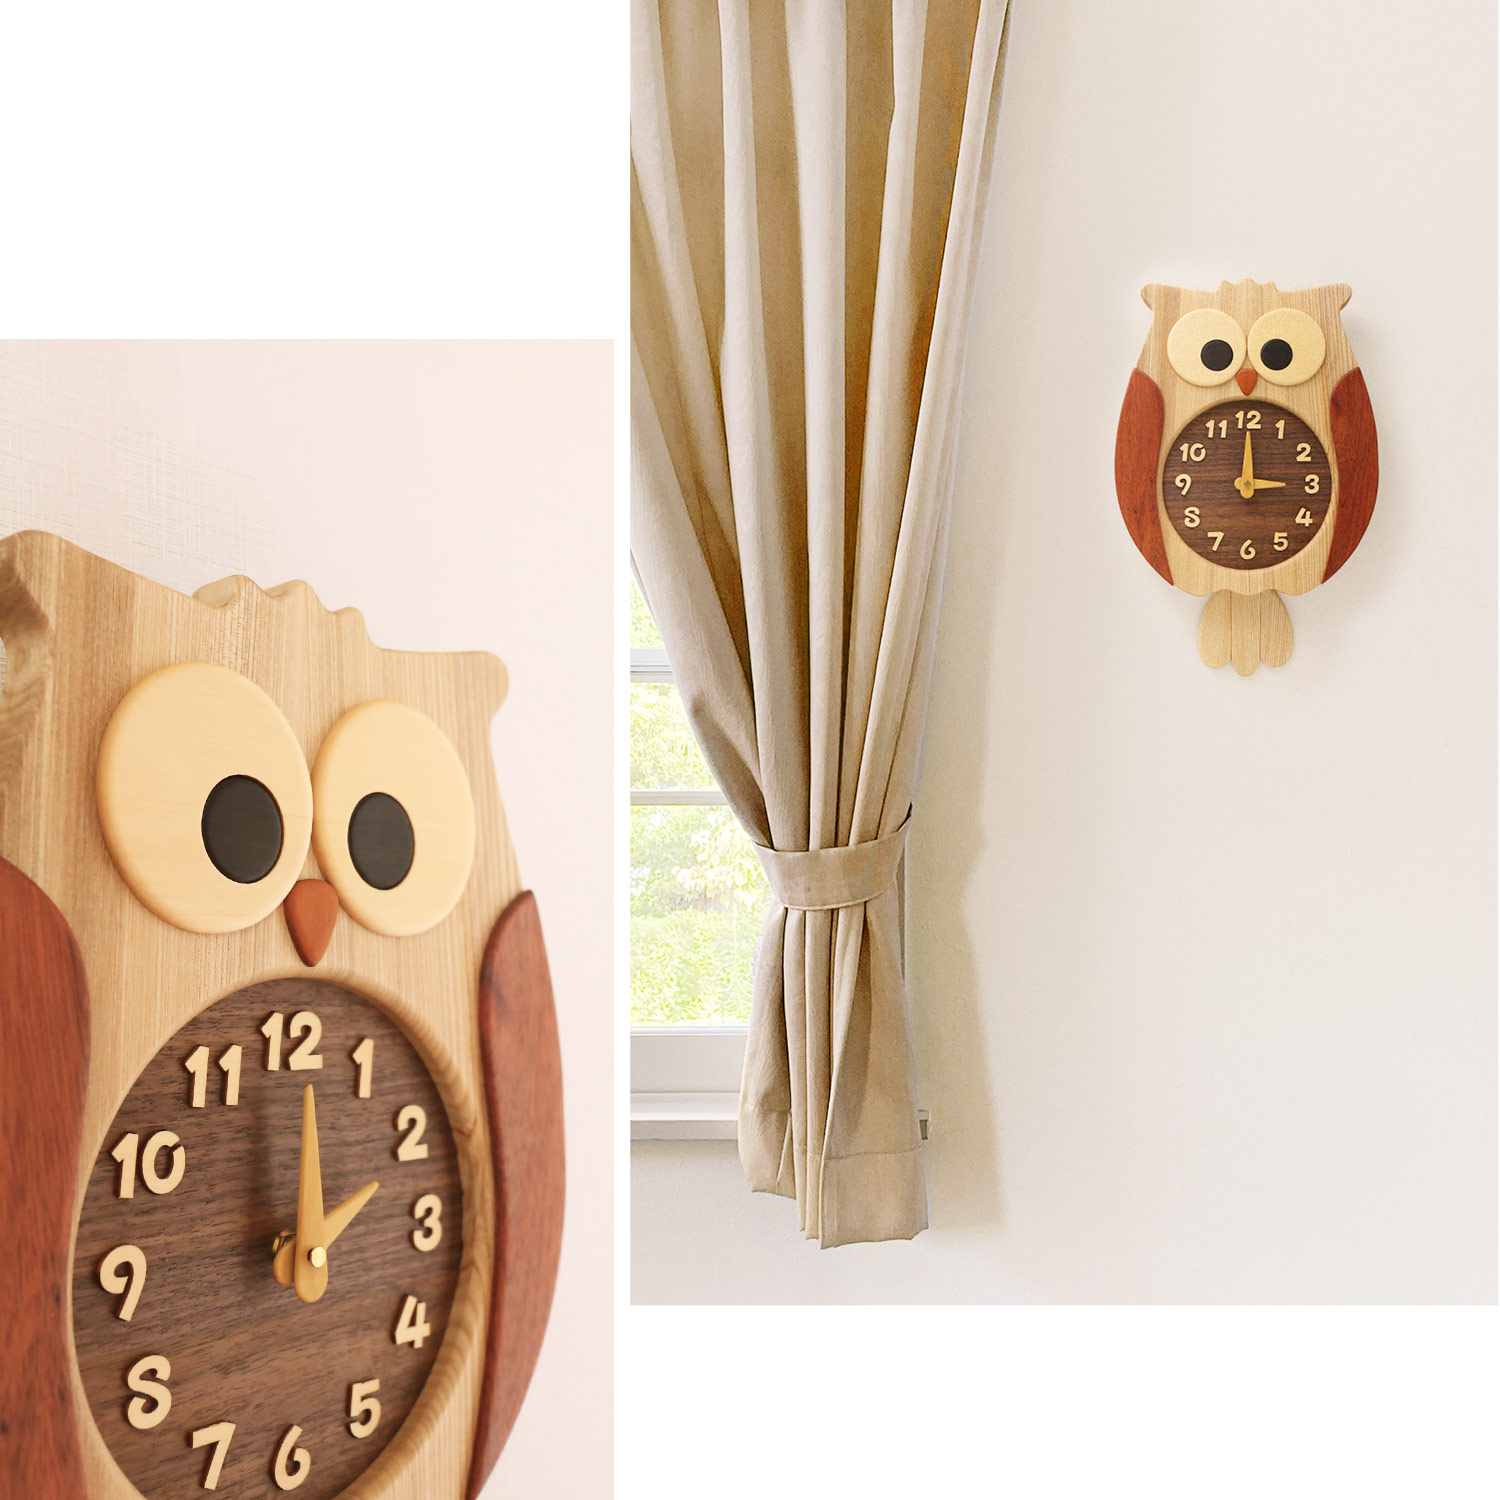 ふくろう掛け時計 壁掛け時計 おしゃれ かわいい 天然木 ふくろう 木製 